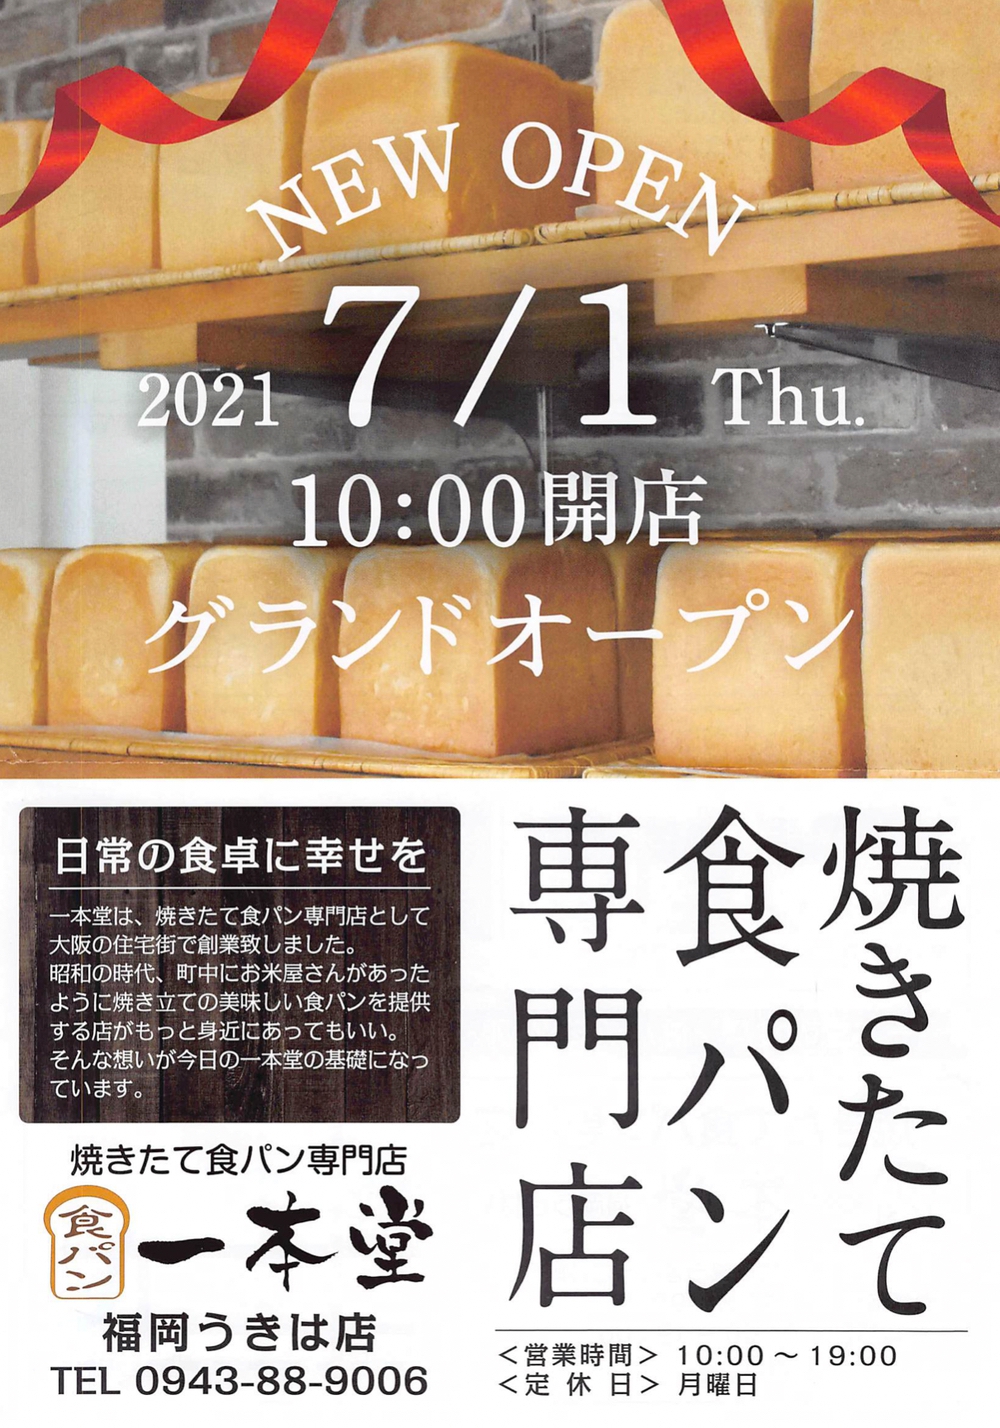 一本堂 福岡うきは店 焼きたて食パン専門店が7月1日オープン【うきは市】